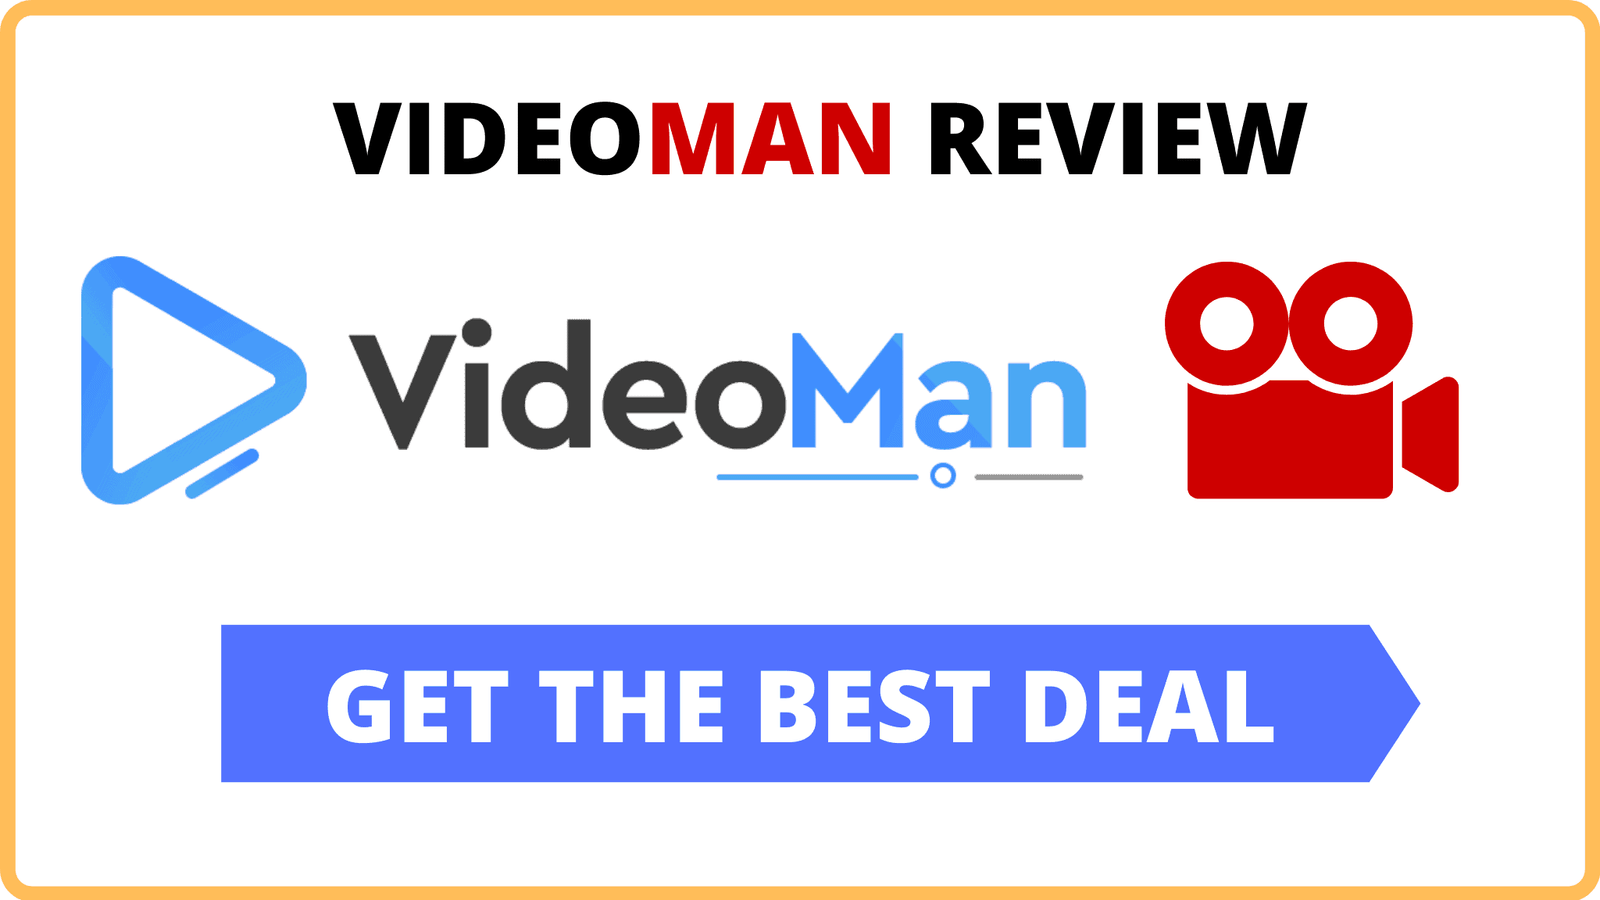 VideoMan Review